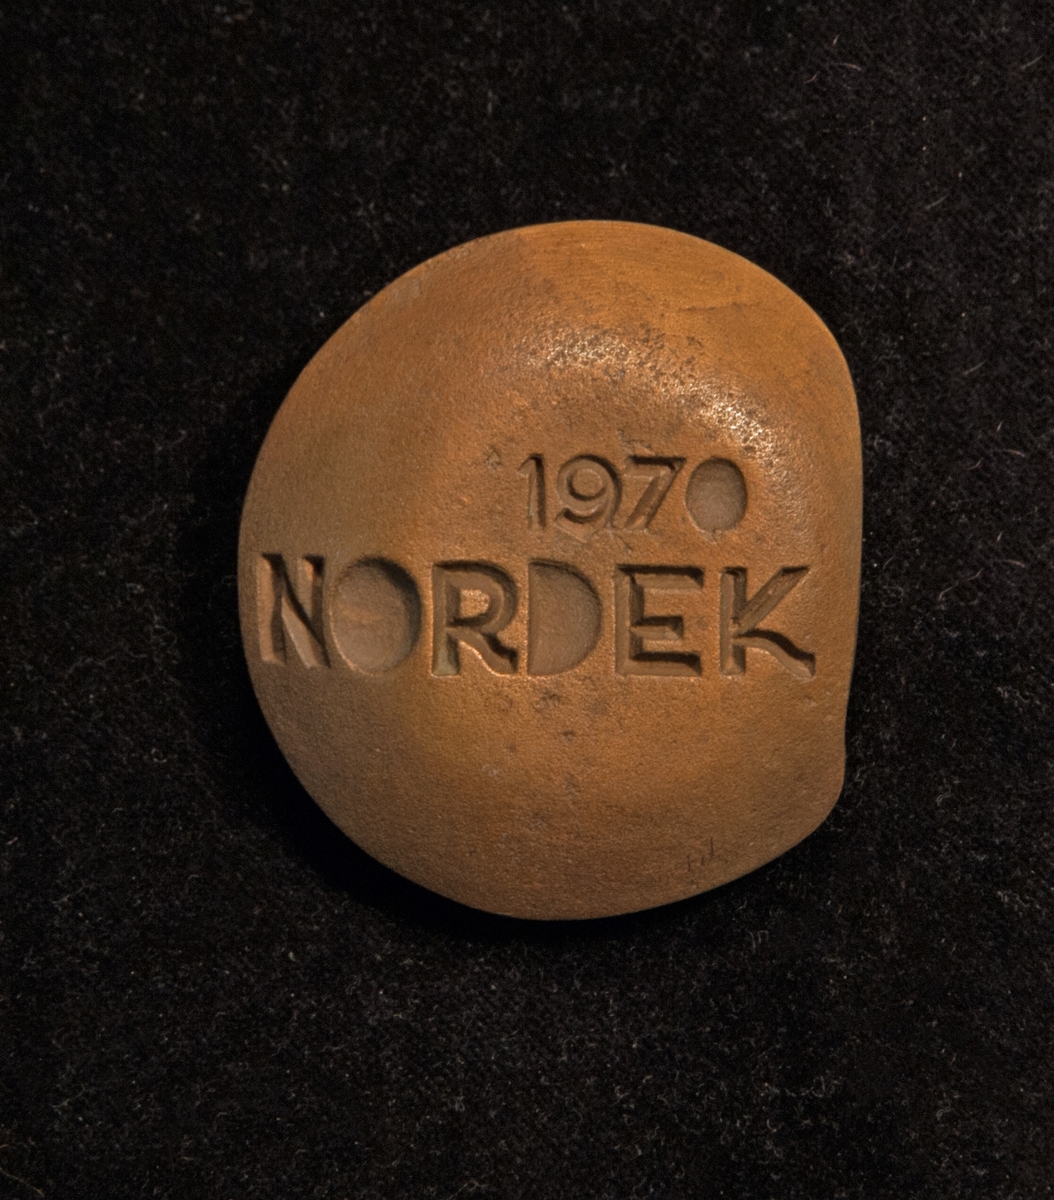 Relief av brons, "Nordek 1970".